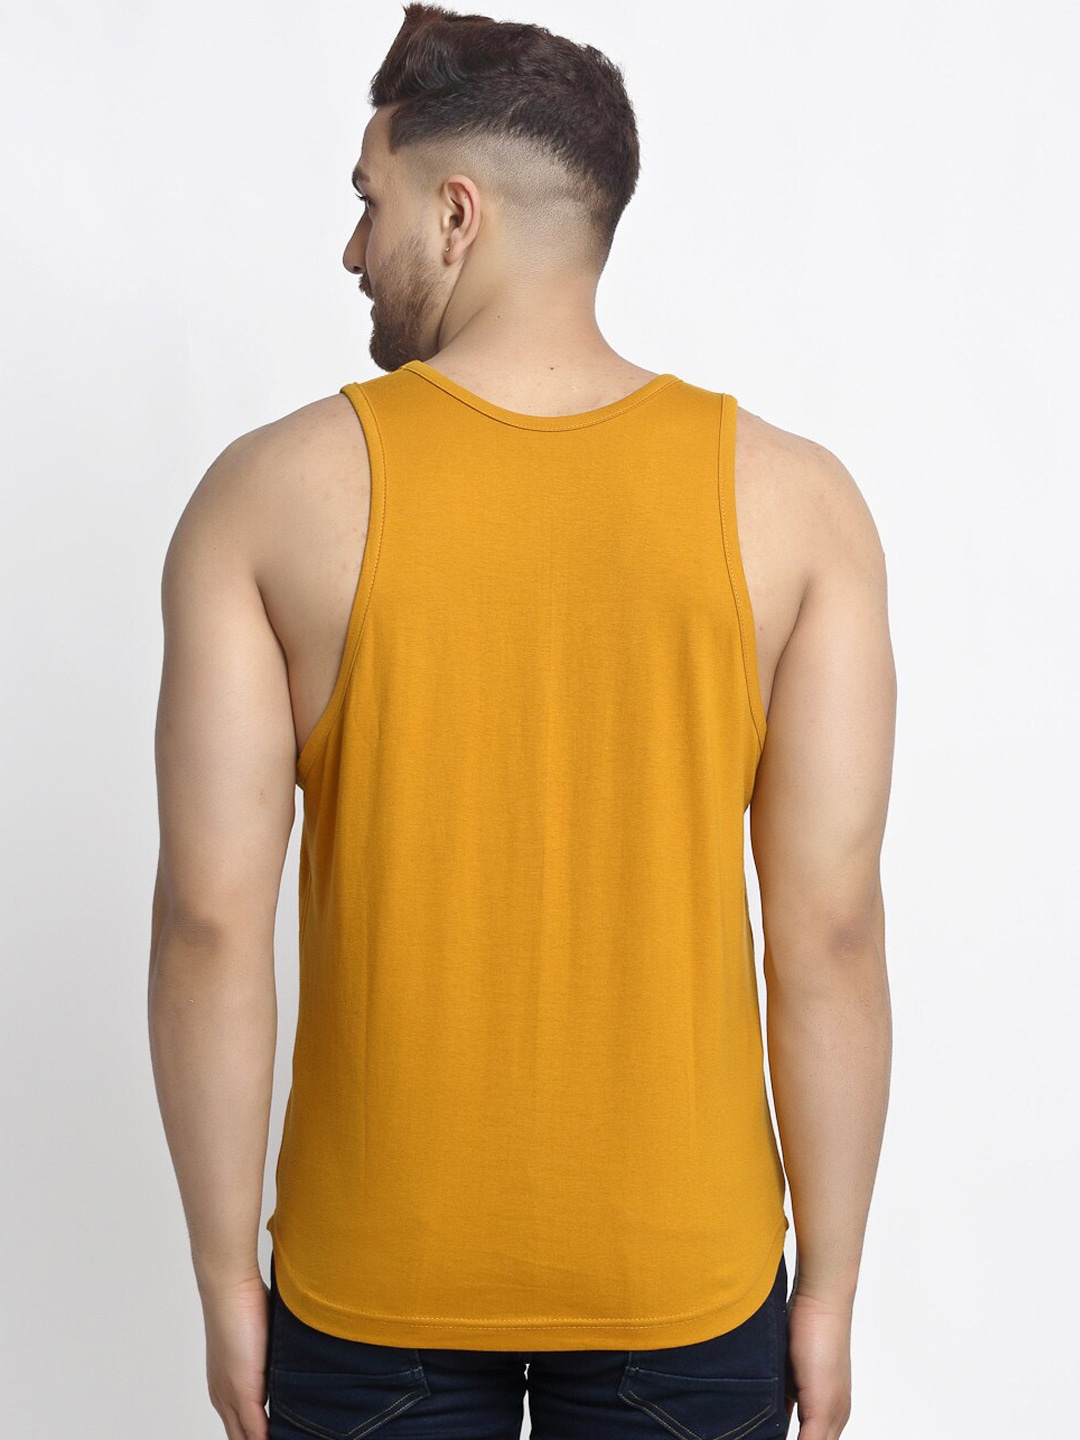 Clothing Innerwear Vests | Friskers Men Pack Of 2 Printed Cotton Innerwear Vest - OL60052